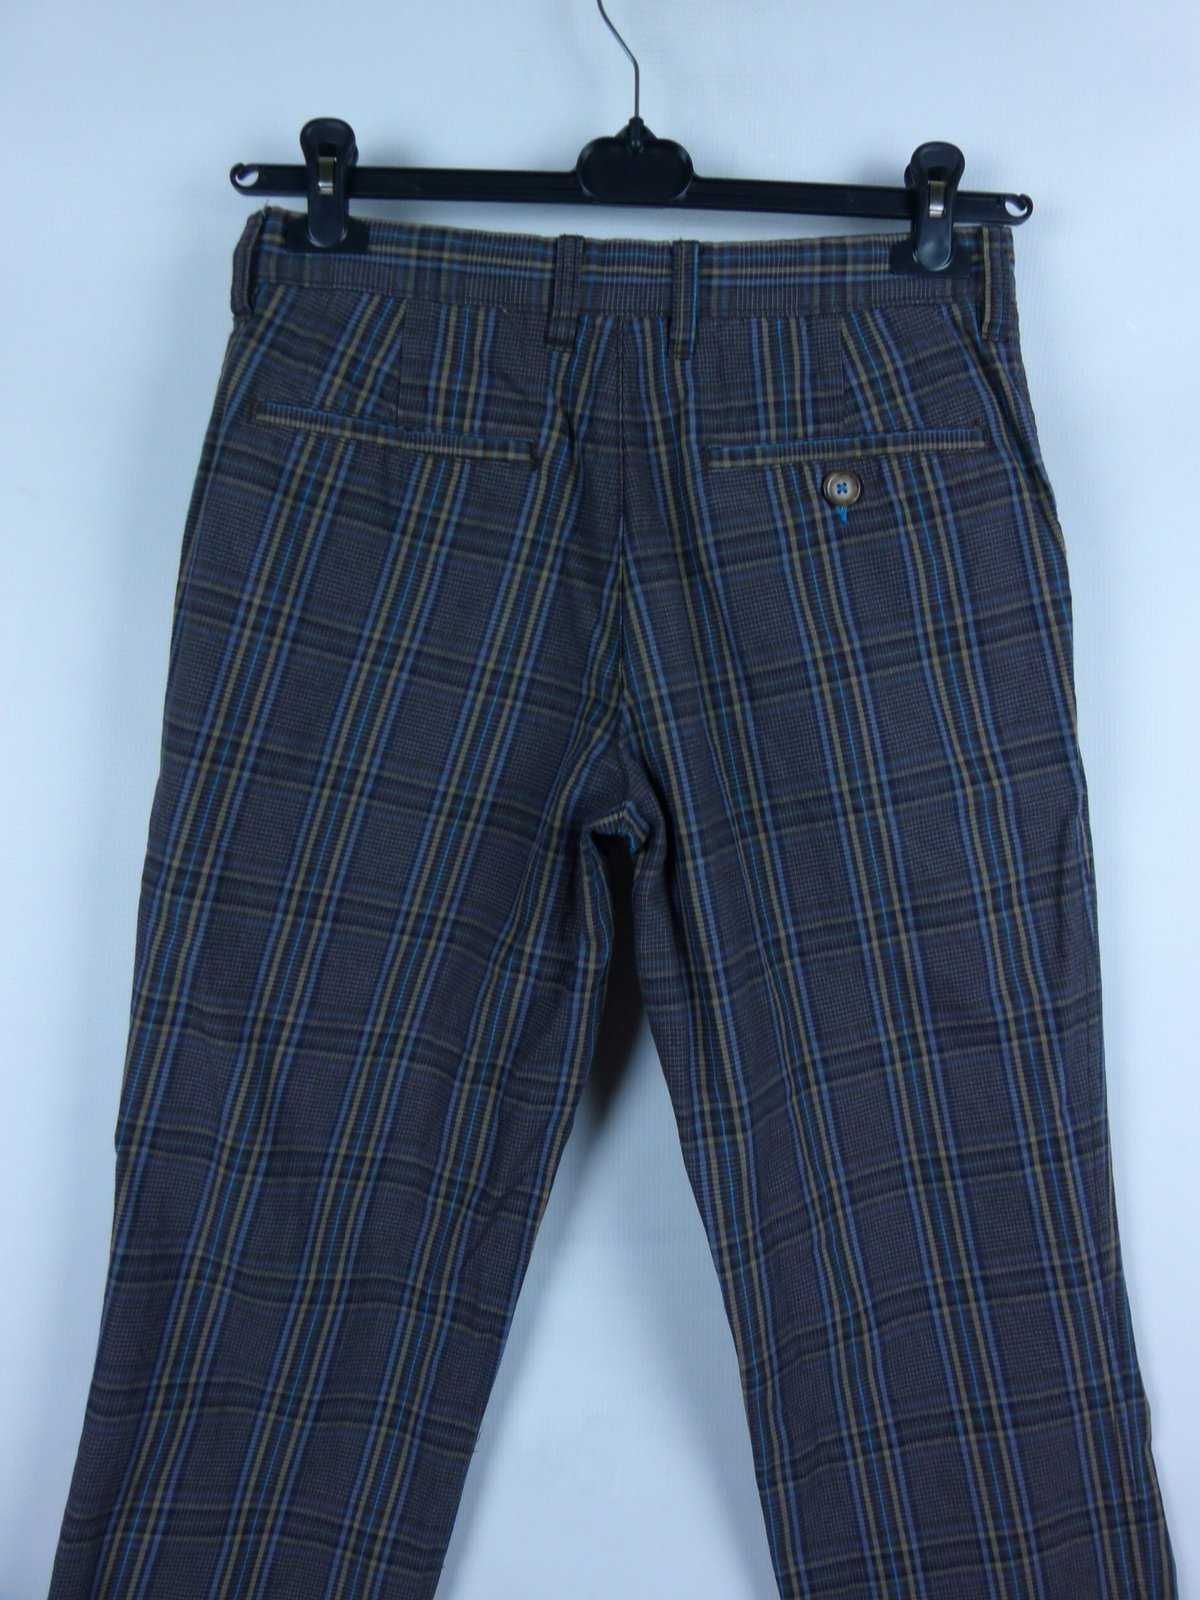 Boden męskie  spodnie w kratkę bawełna / 30R pas 78 cm